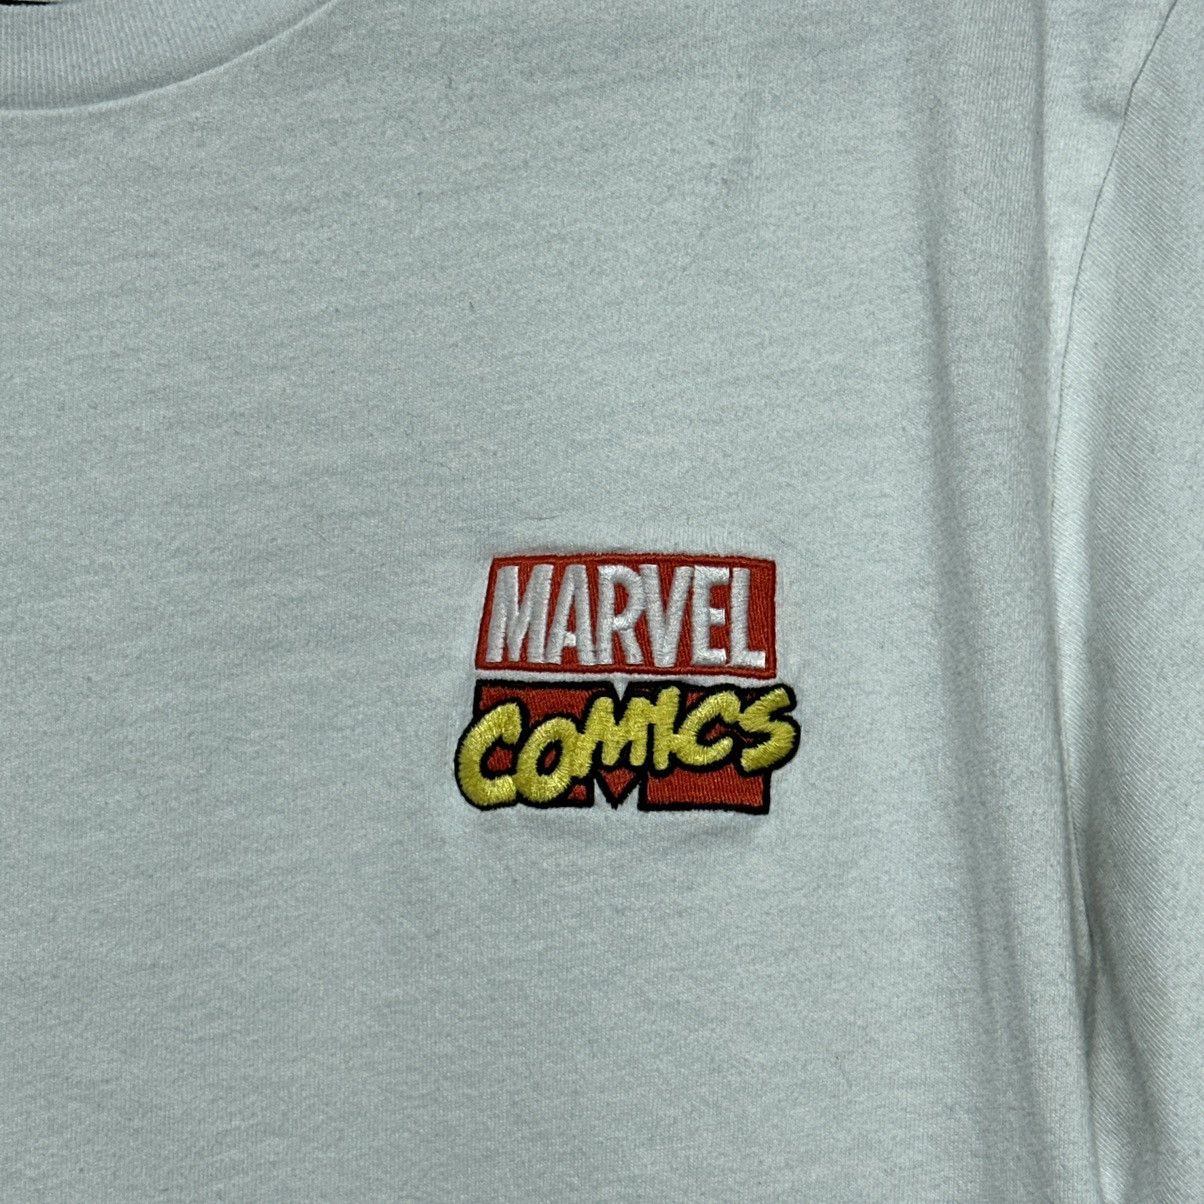 Uniqlo x Marvel Avengers Graphic T-Shirt Large - 4